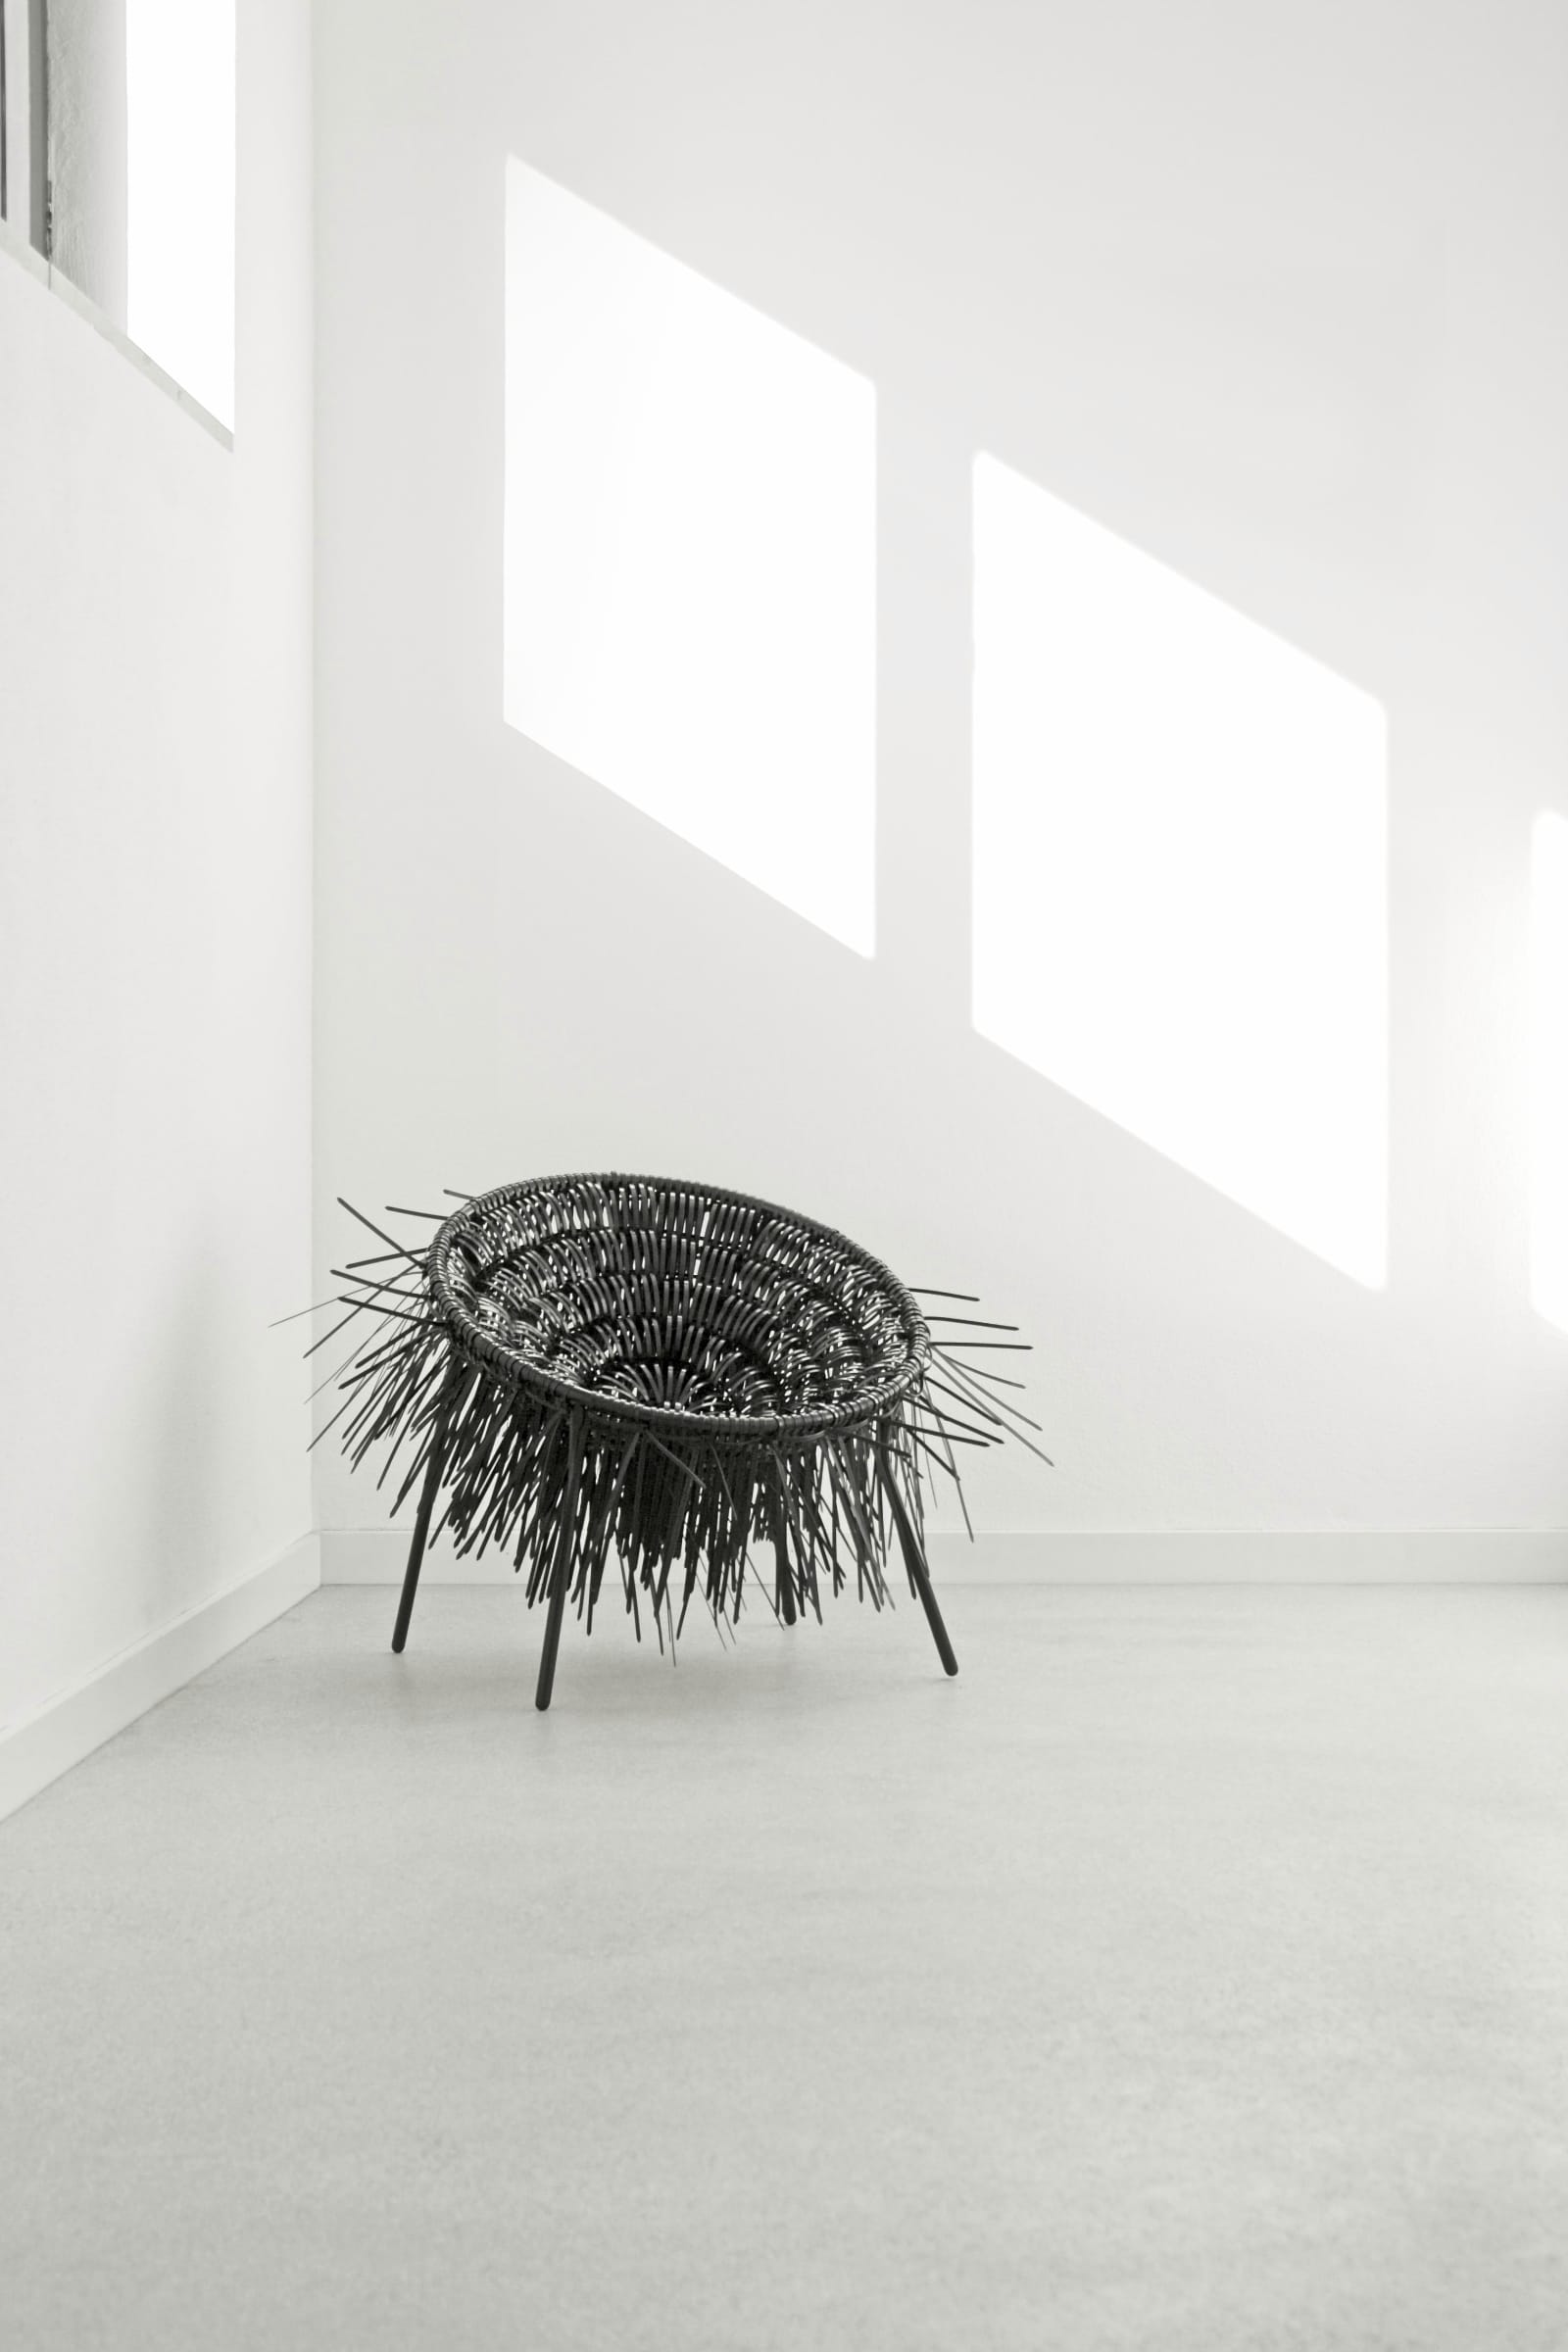 Oricio armchair made of interwoven zip ties is part of the design studio projects